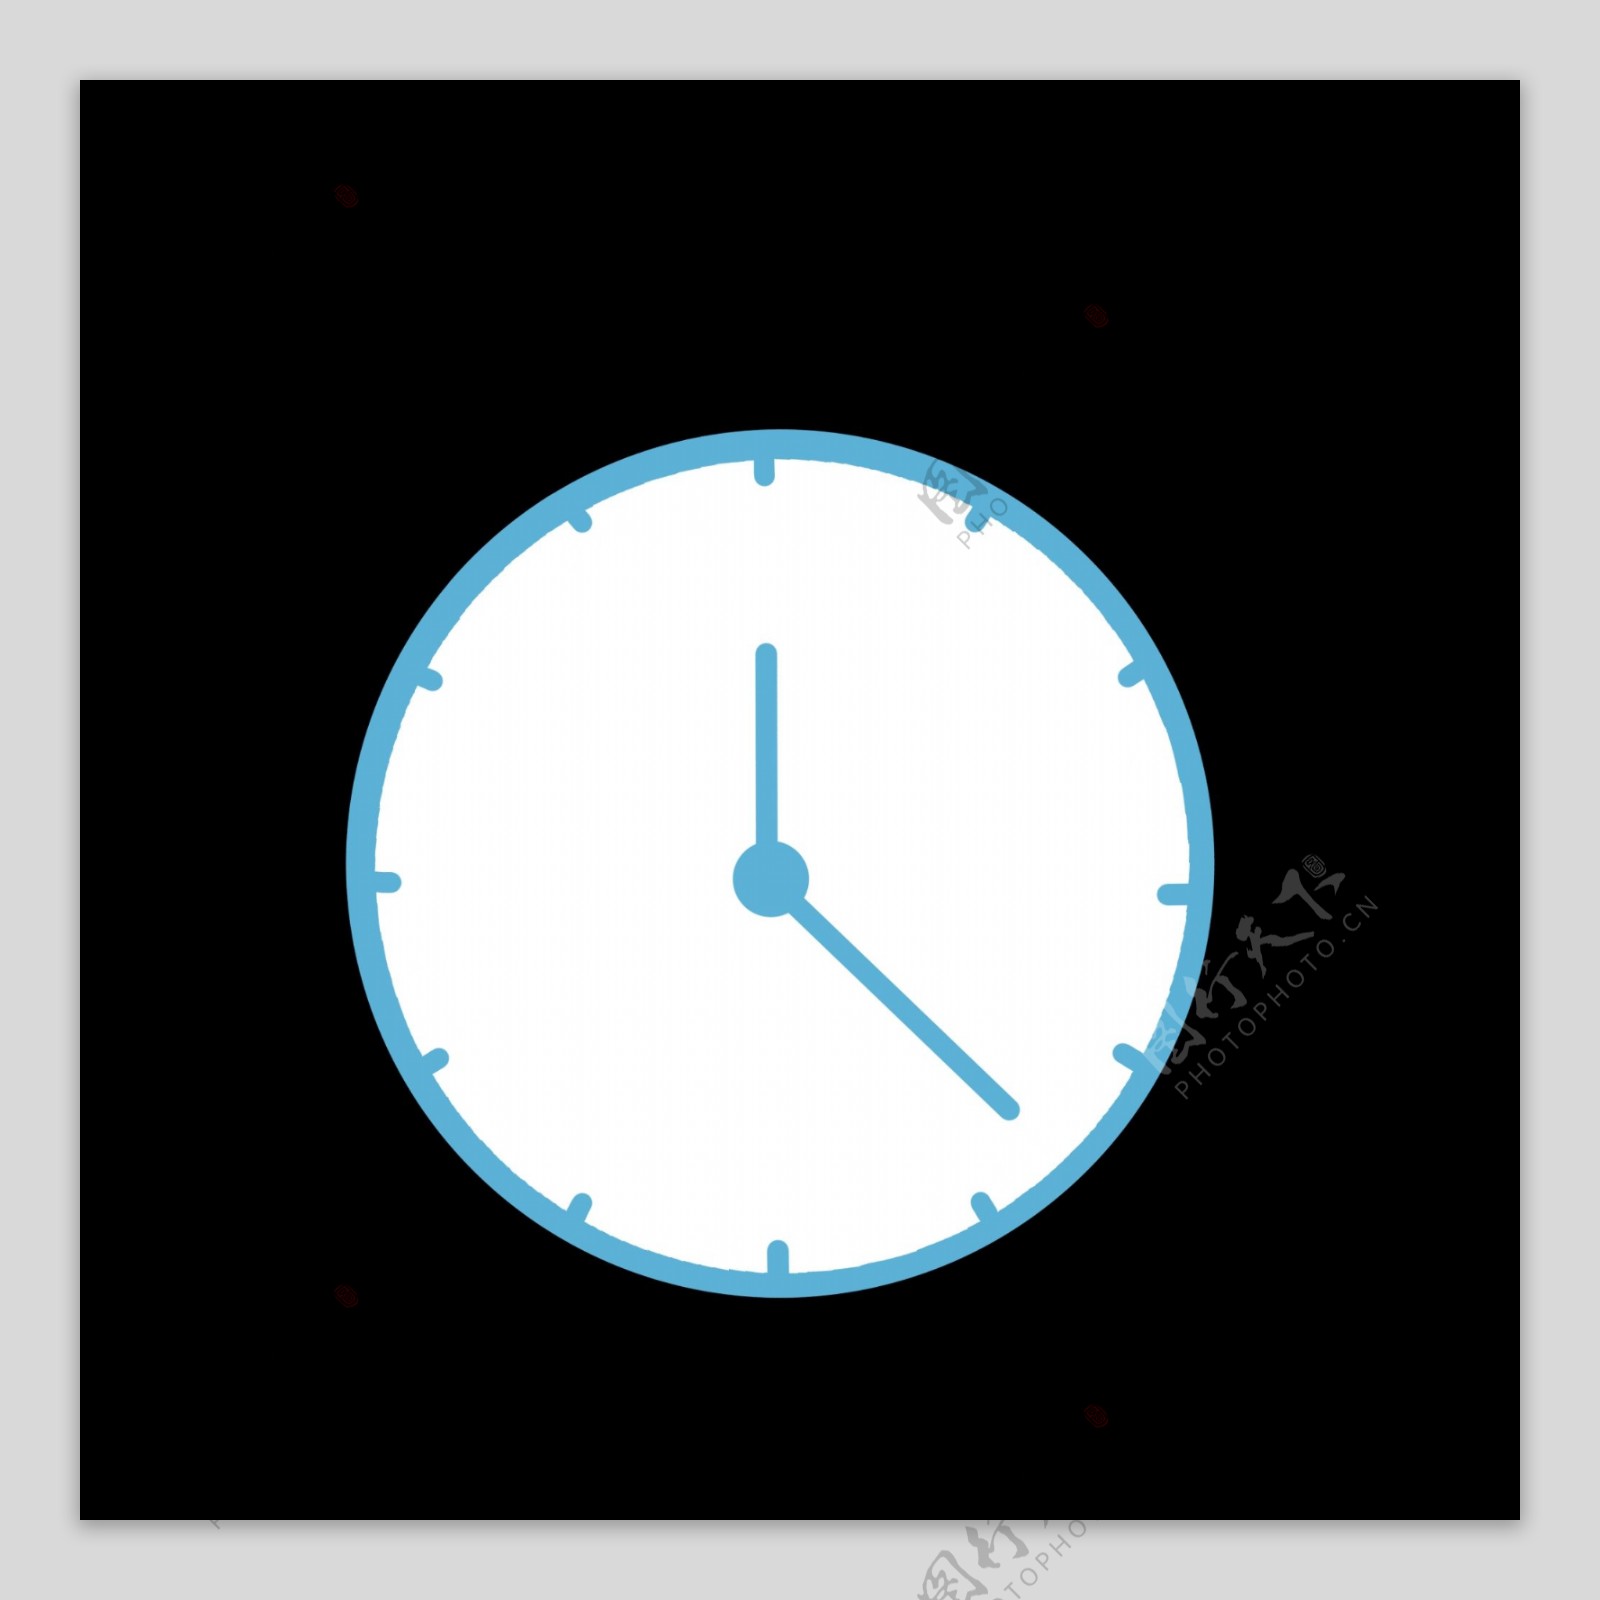 蓝色时钟样式图标